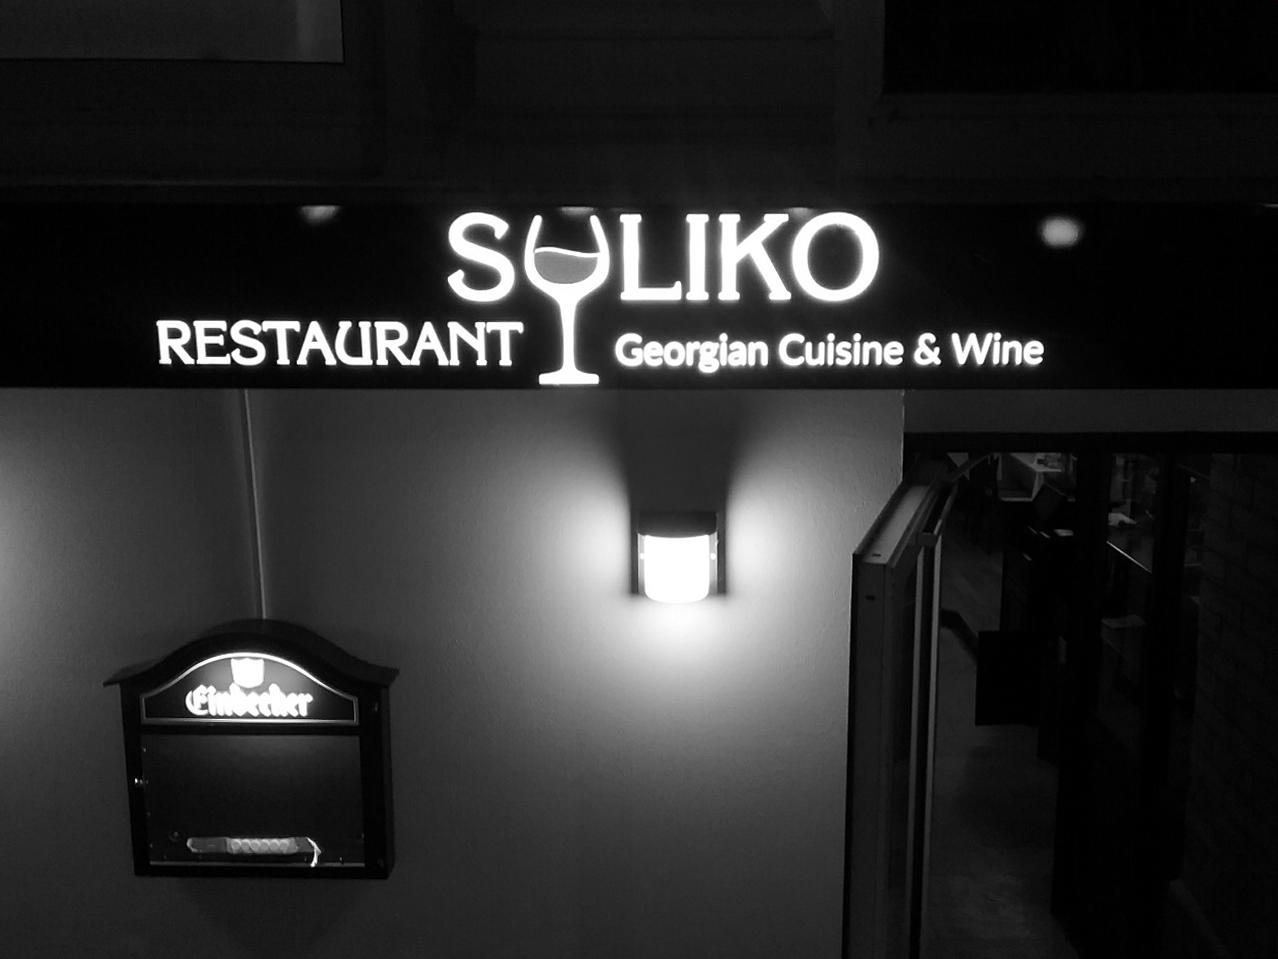 Suliko - Georgian Cuisine & Wine, Mittelweg 24 in Hamburg